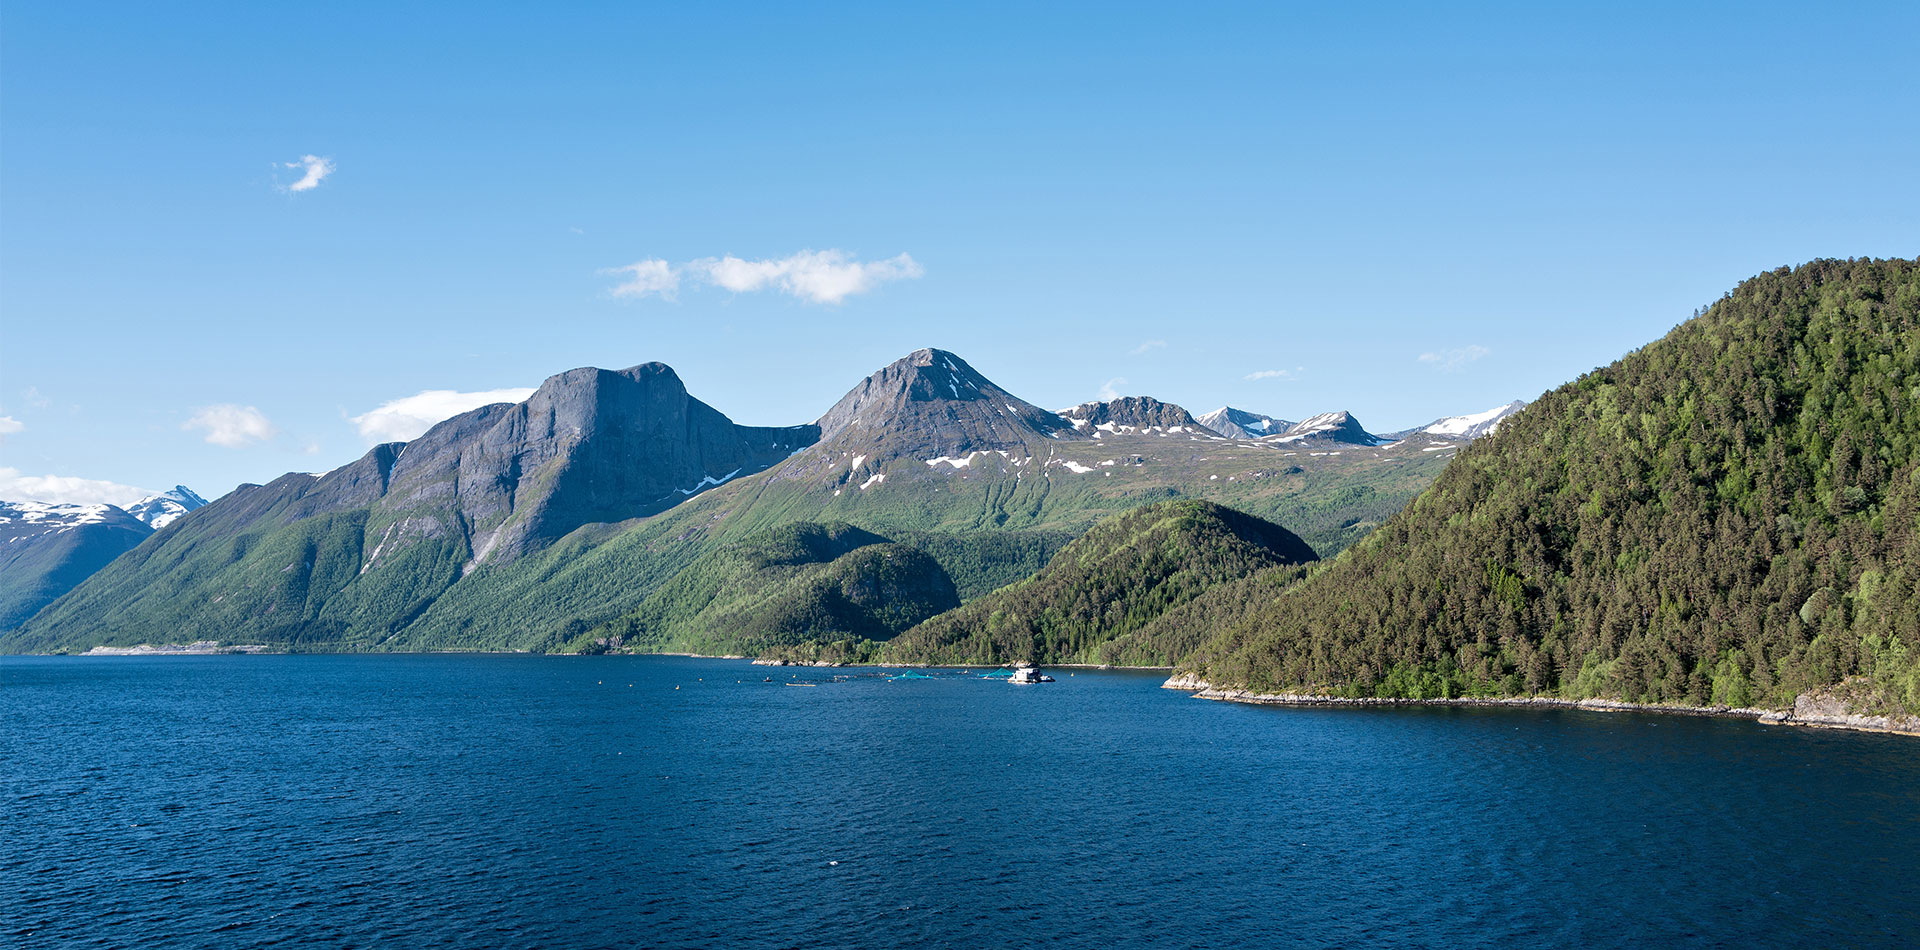 Romsdalfjord, Norway